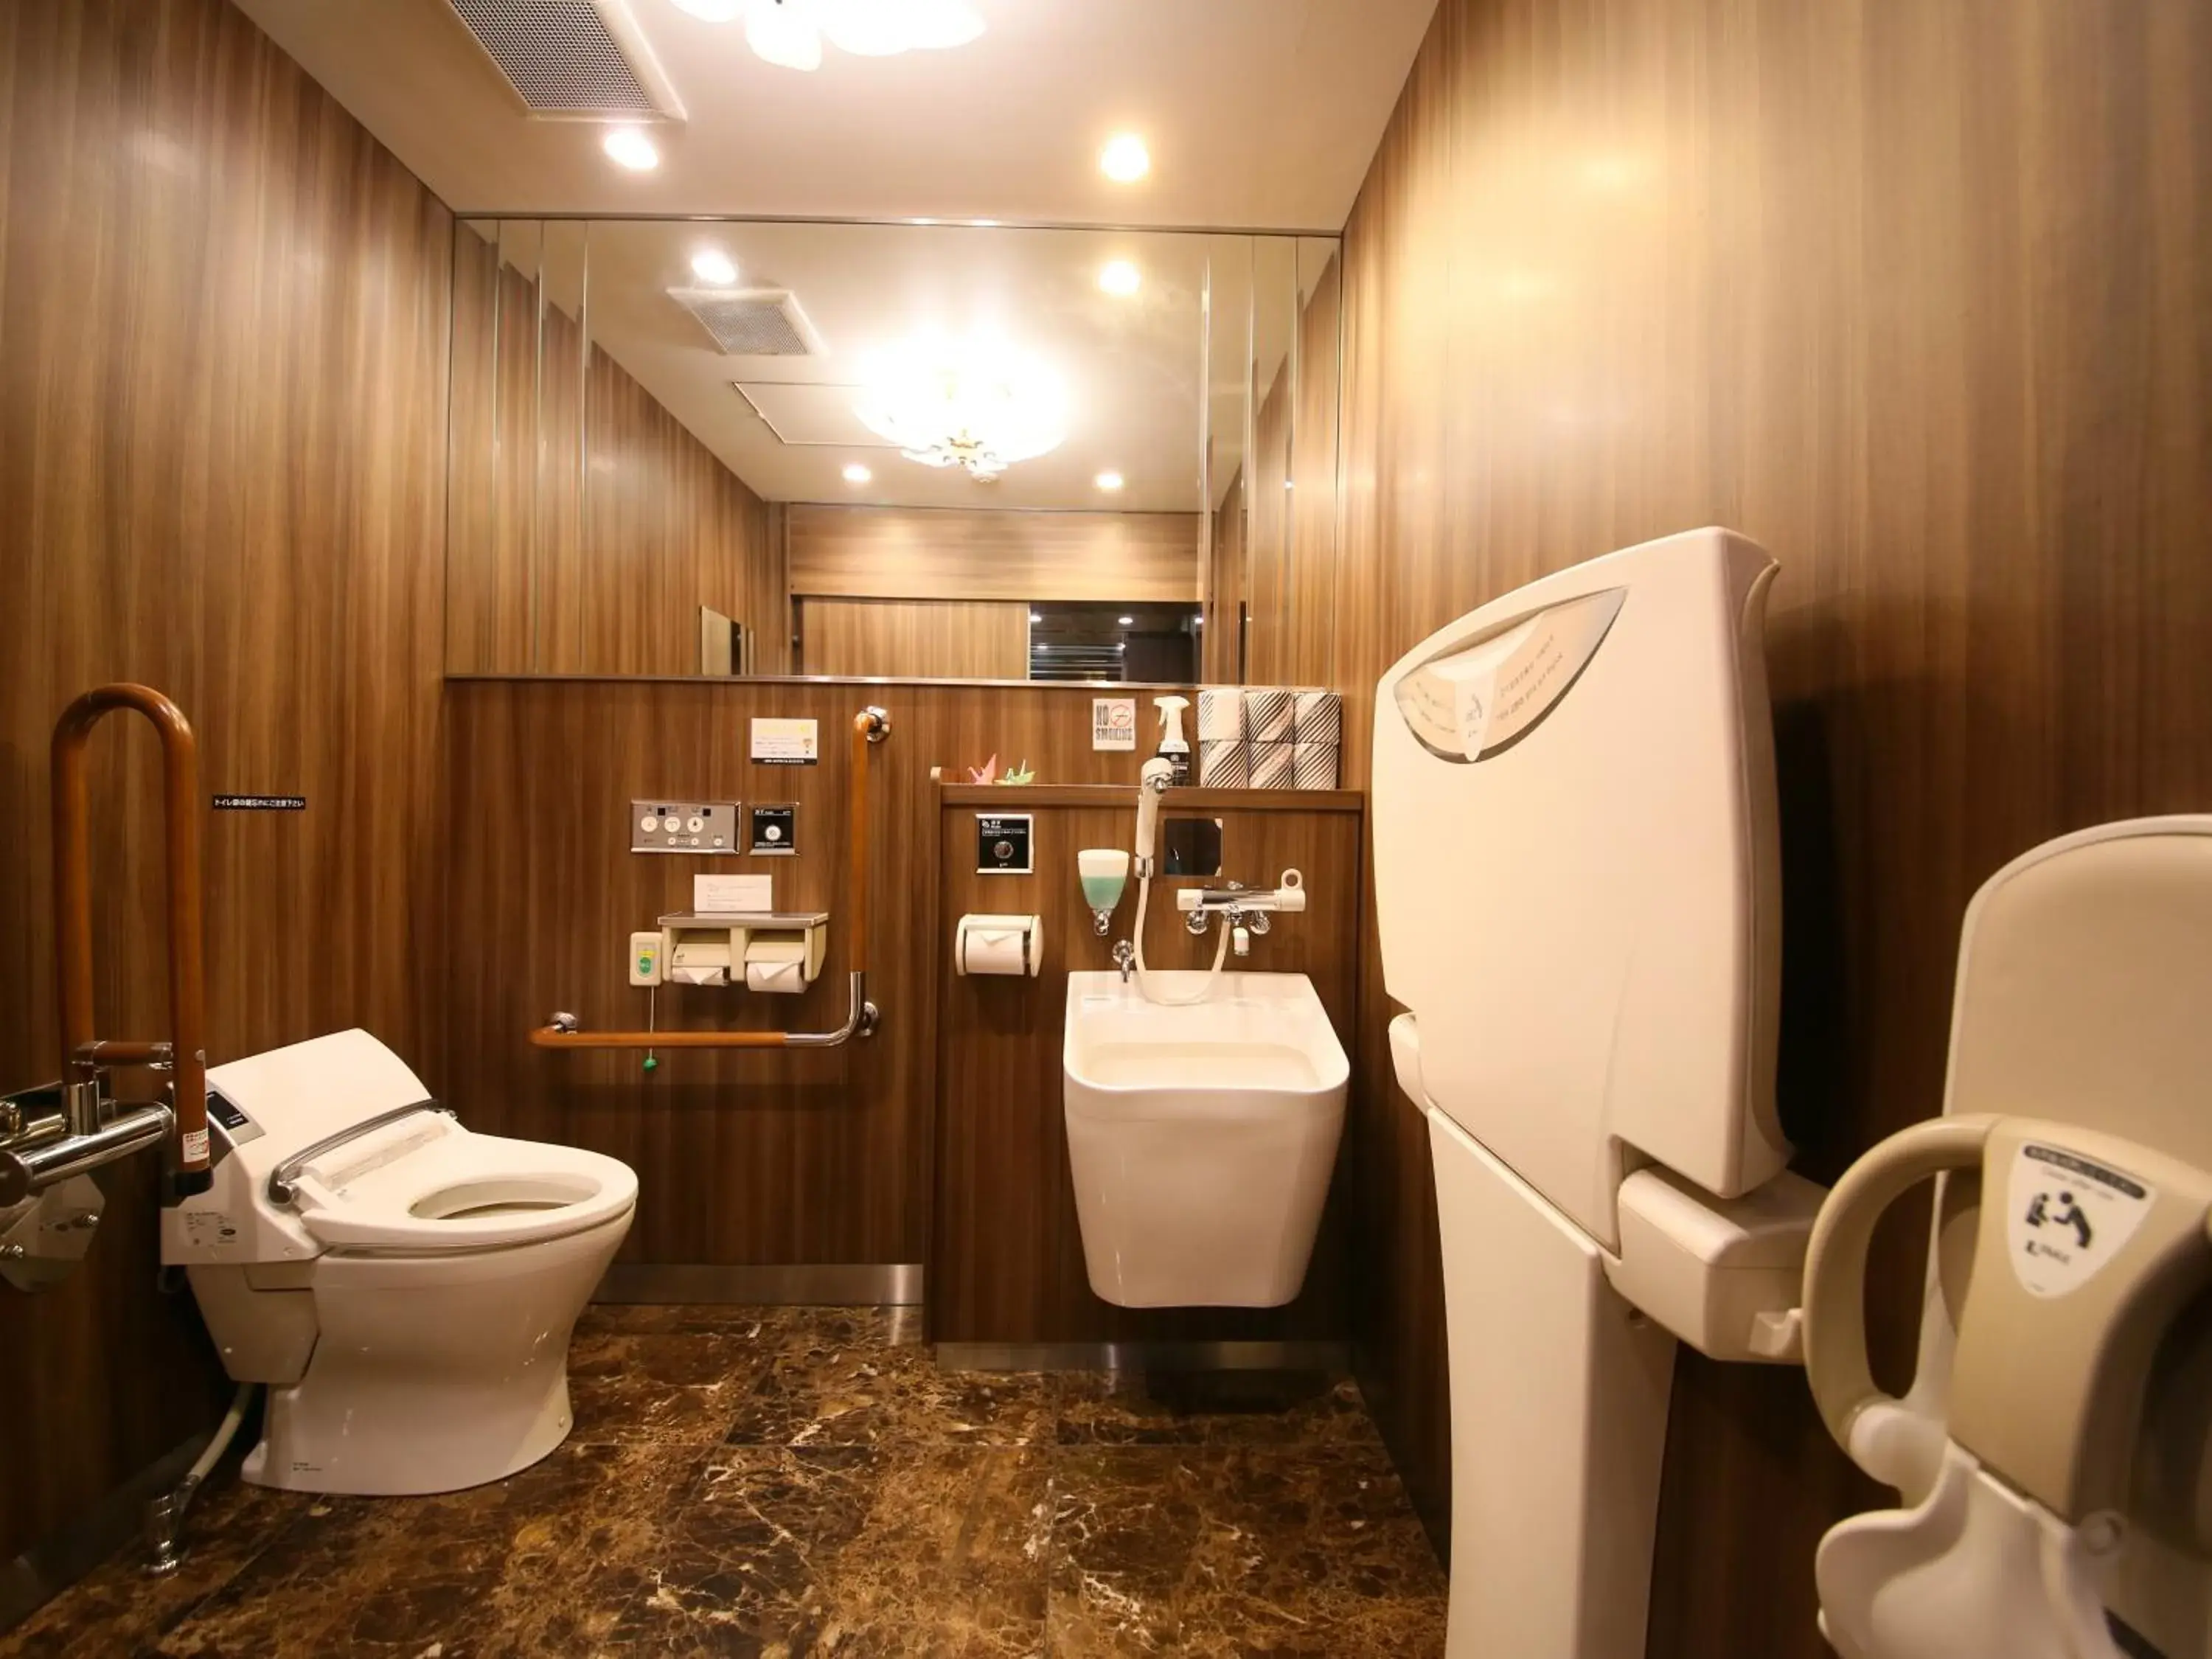 Area and facilities, Bathroom in APA Hotel Shimbashi Onarimon